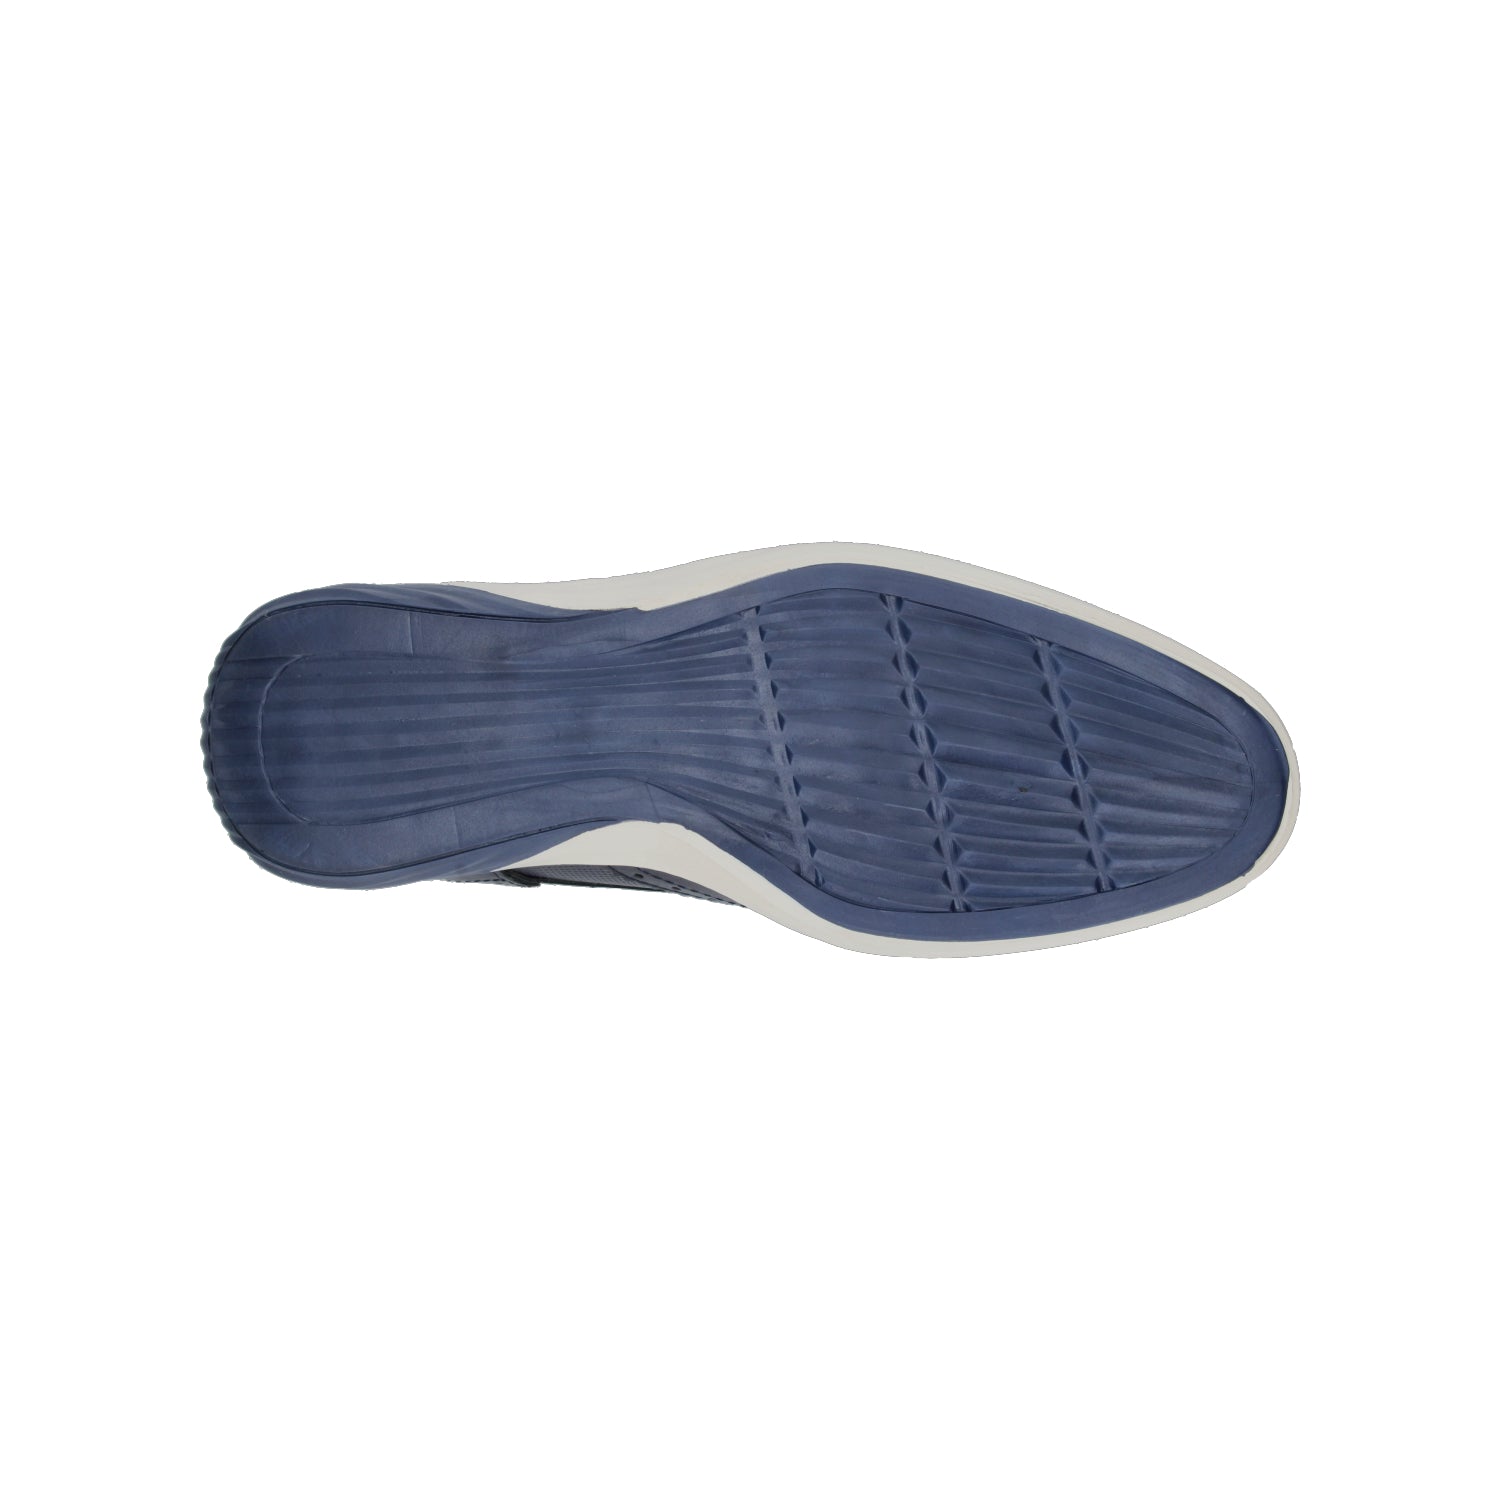 Zapato Casual Lugo conti para Hombre H13161 Azul marino [LUG3] - Zapaterias Torreon